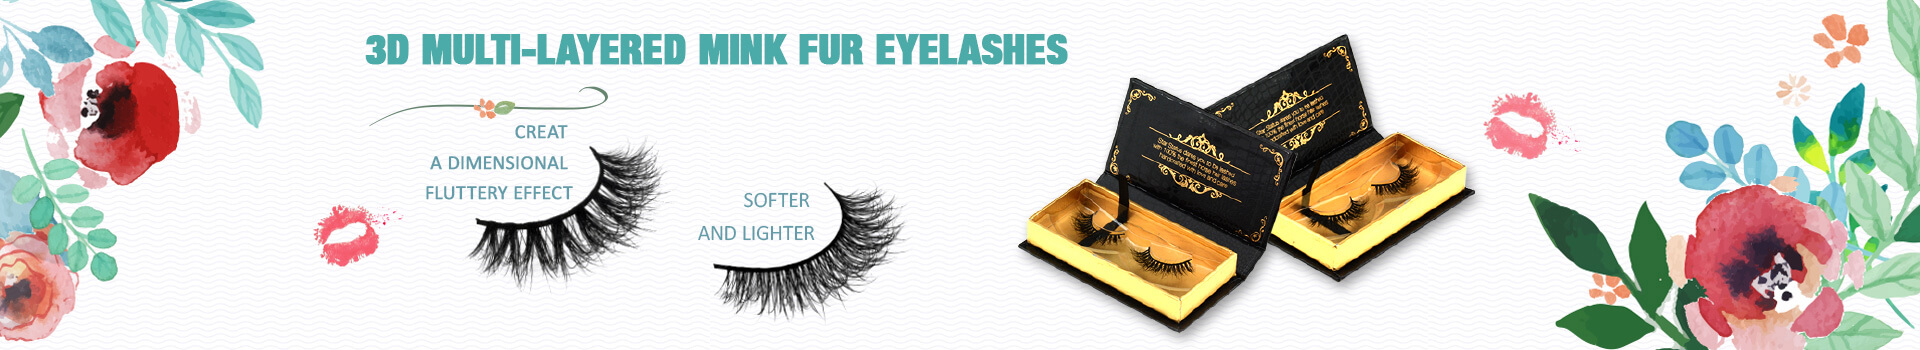 3D Multi-layered Mink Fur Eyelashes MV45